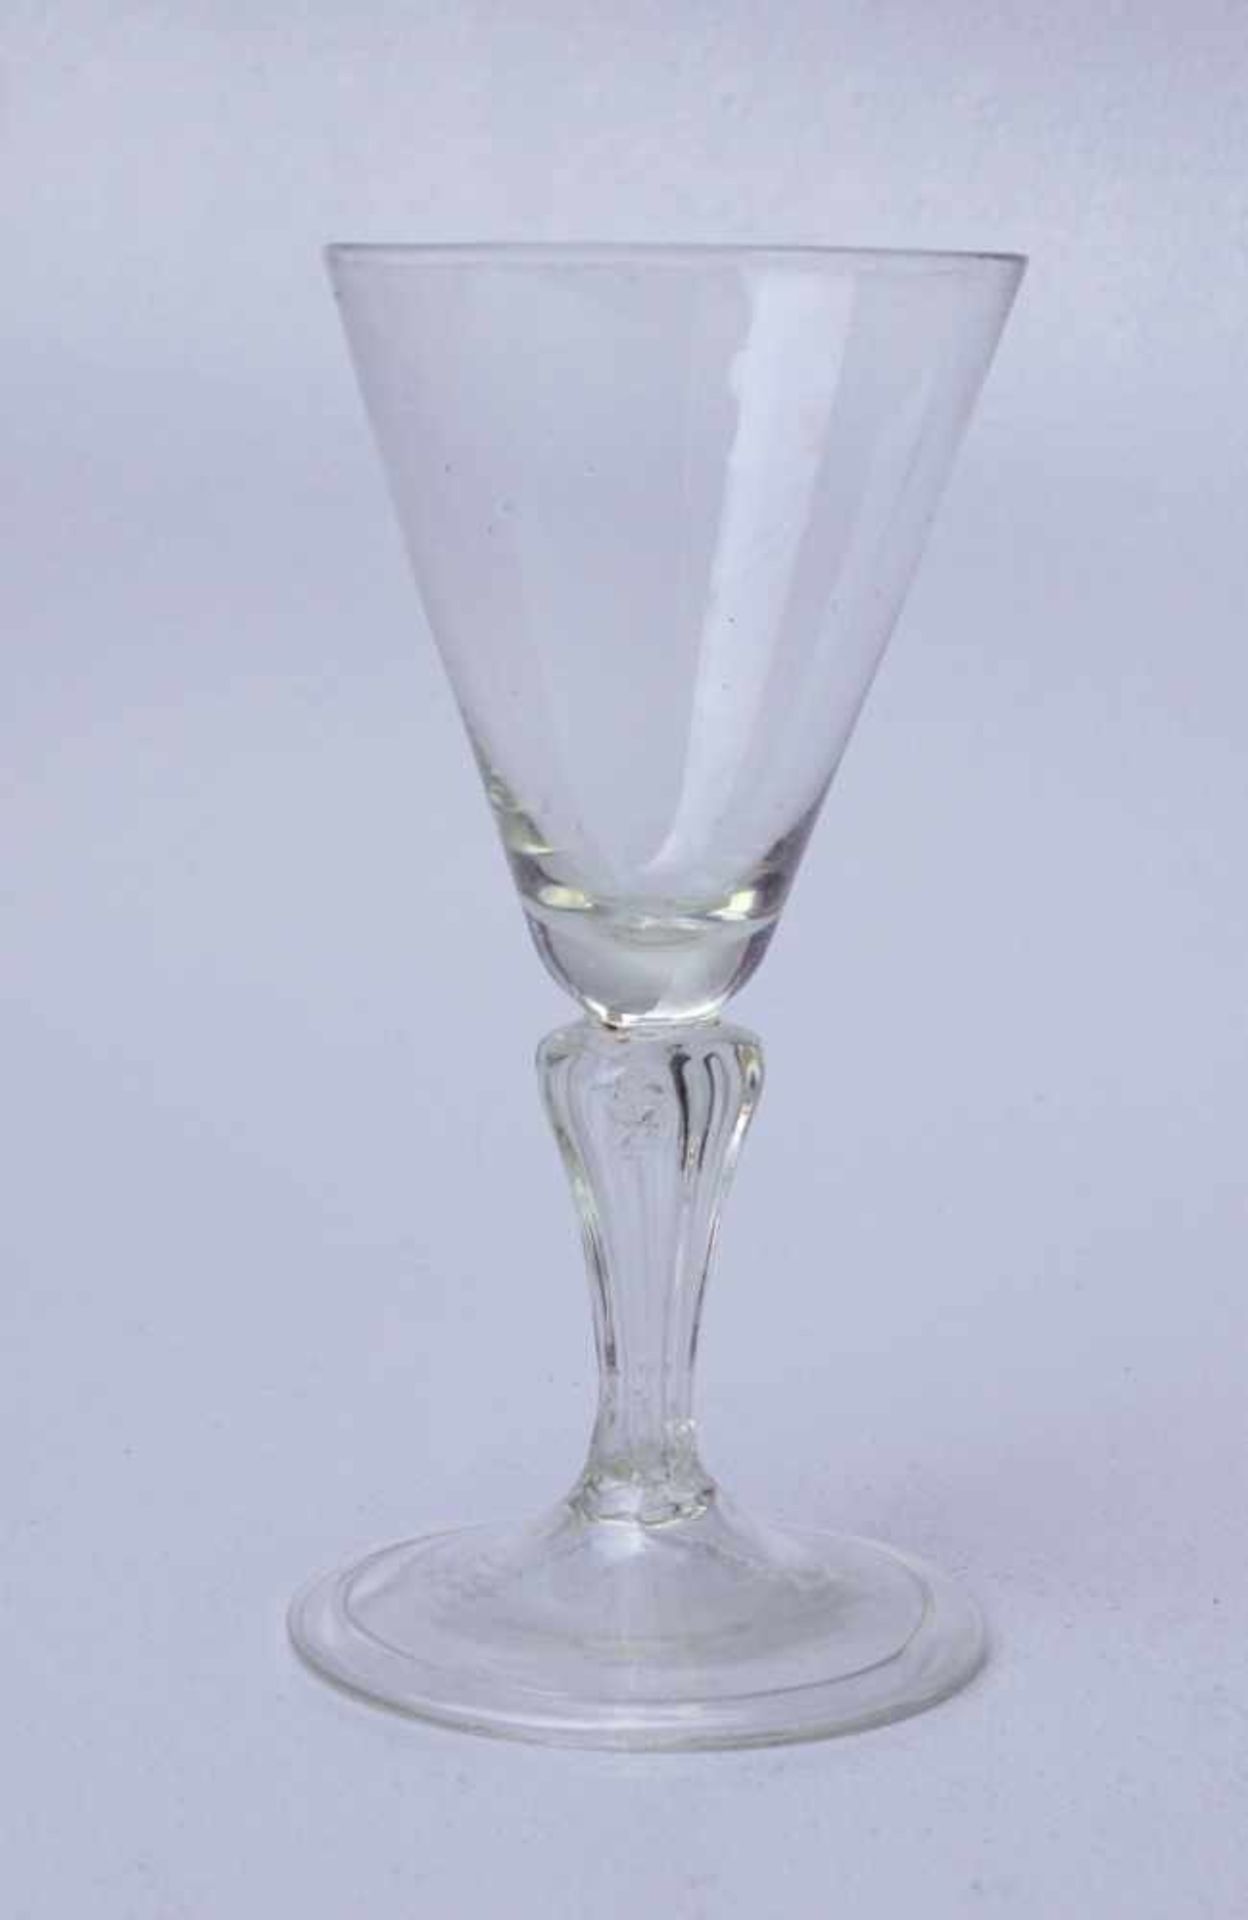 Seltenes Trichterglas des 18. Jhd.Farbloses Glas, geblasen, breiter Fuß mit umgelegtem Standring,